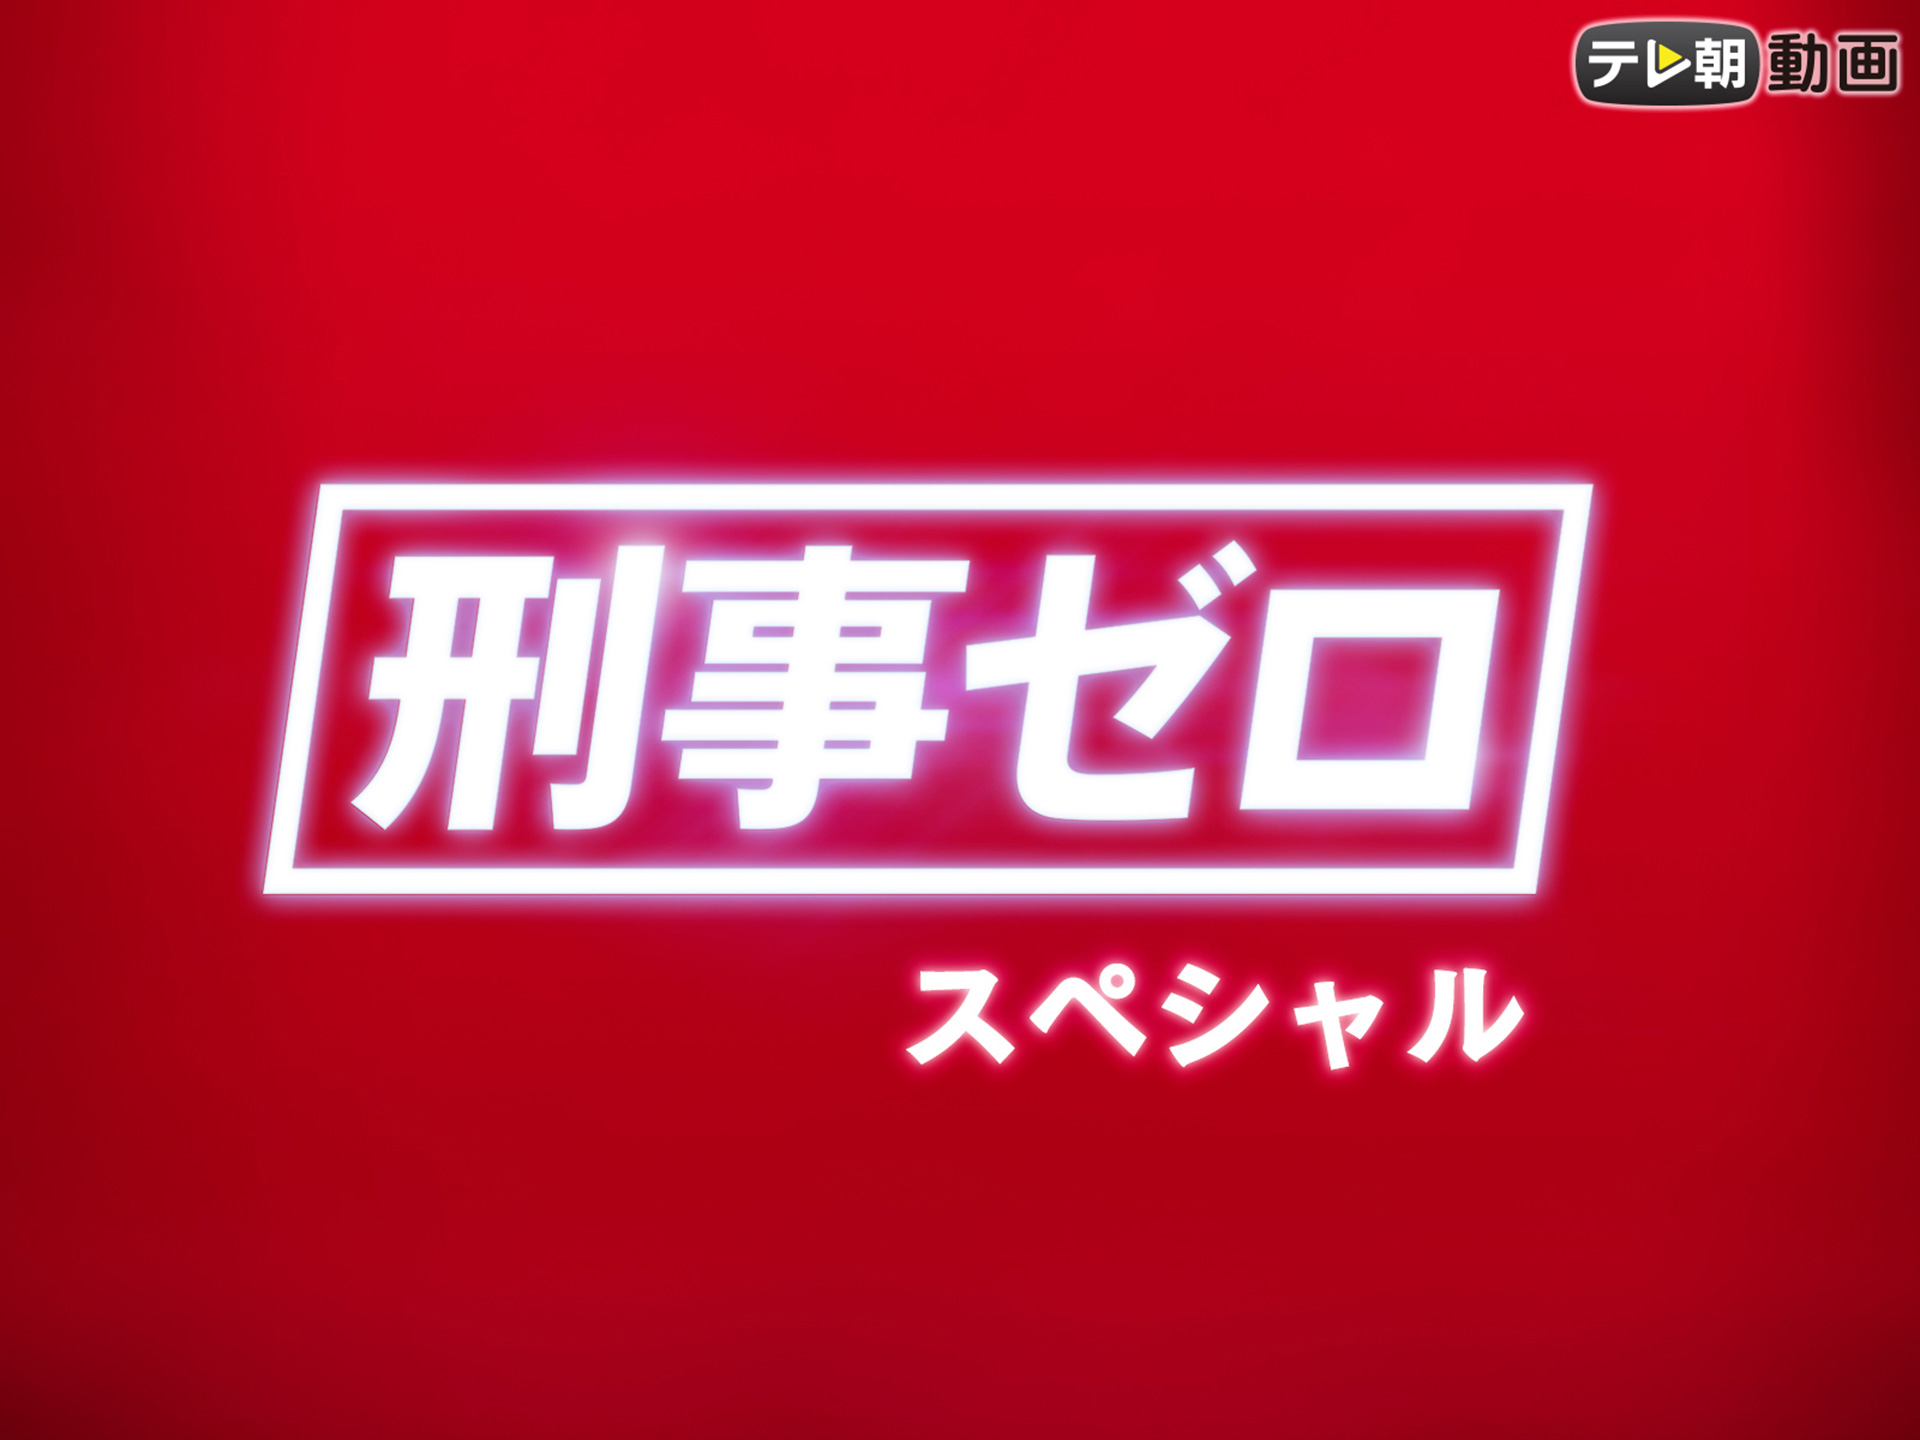 ドラマ 刑事ゼロ スペシャル の動画 初月無料 動画配信サービスのビデオマーケット